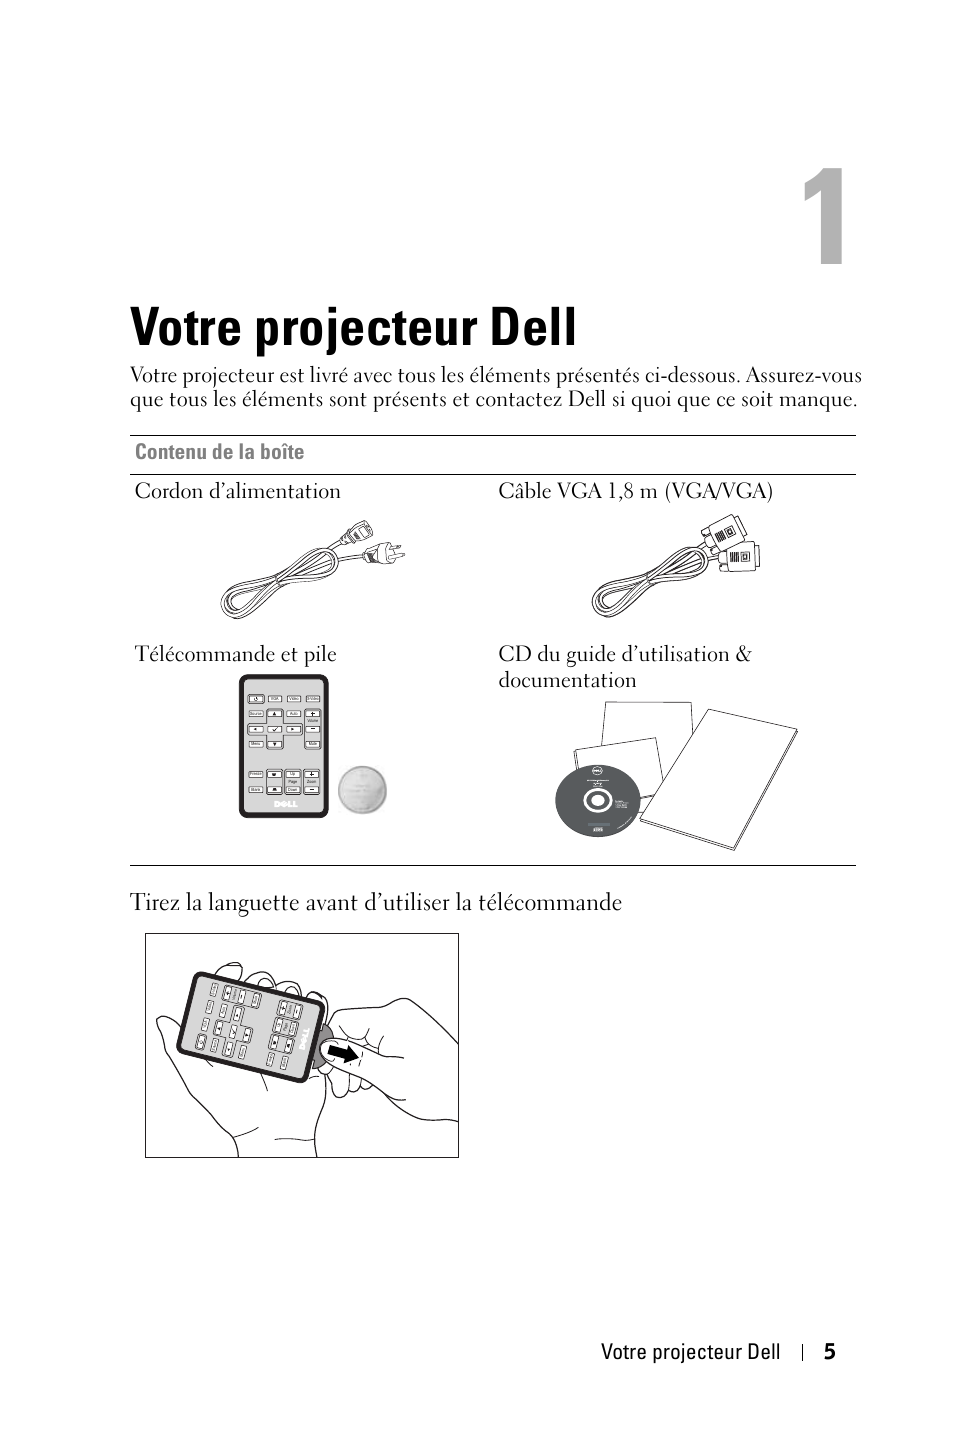 Votre projecteur dell, Votre projecteur dell 5 | Dell 1420X Projector Manuel d'utilisation | Page 5 / 63